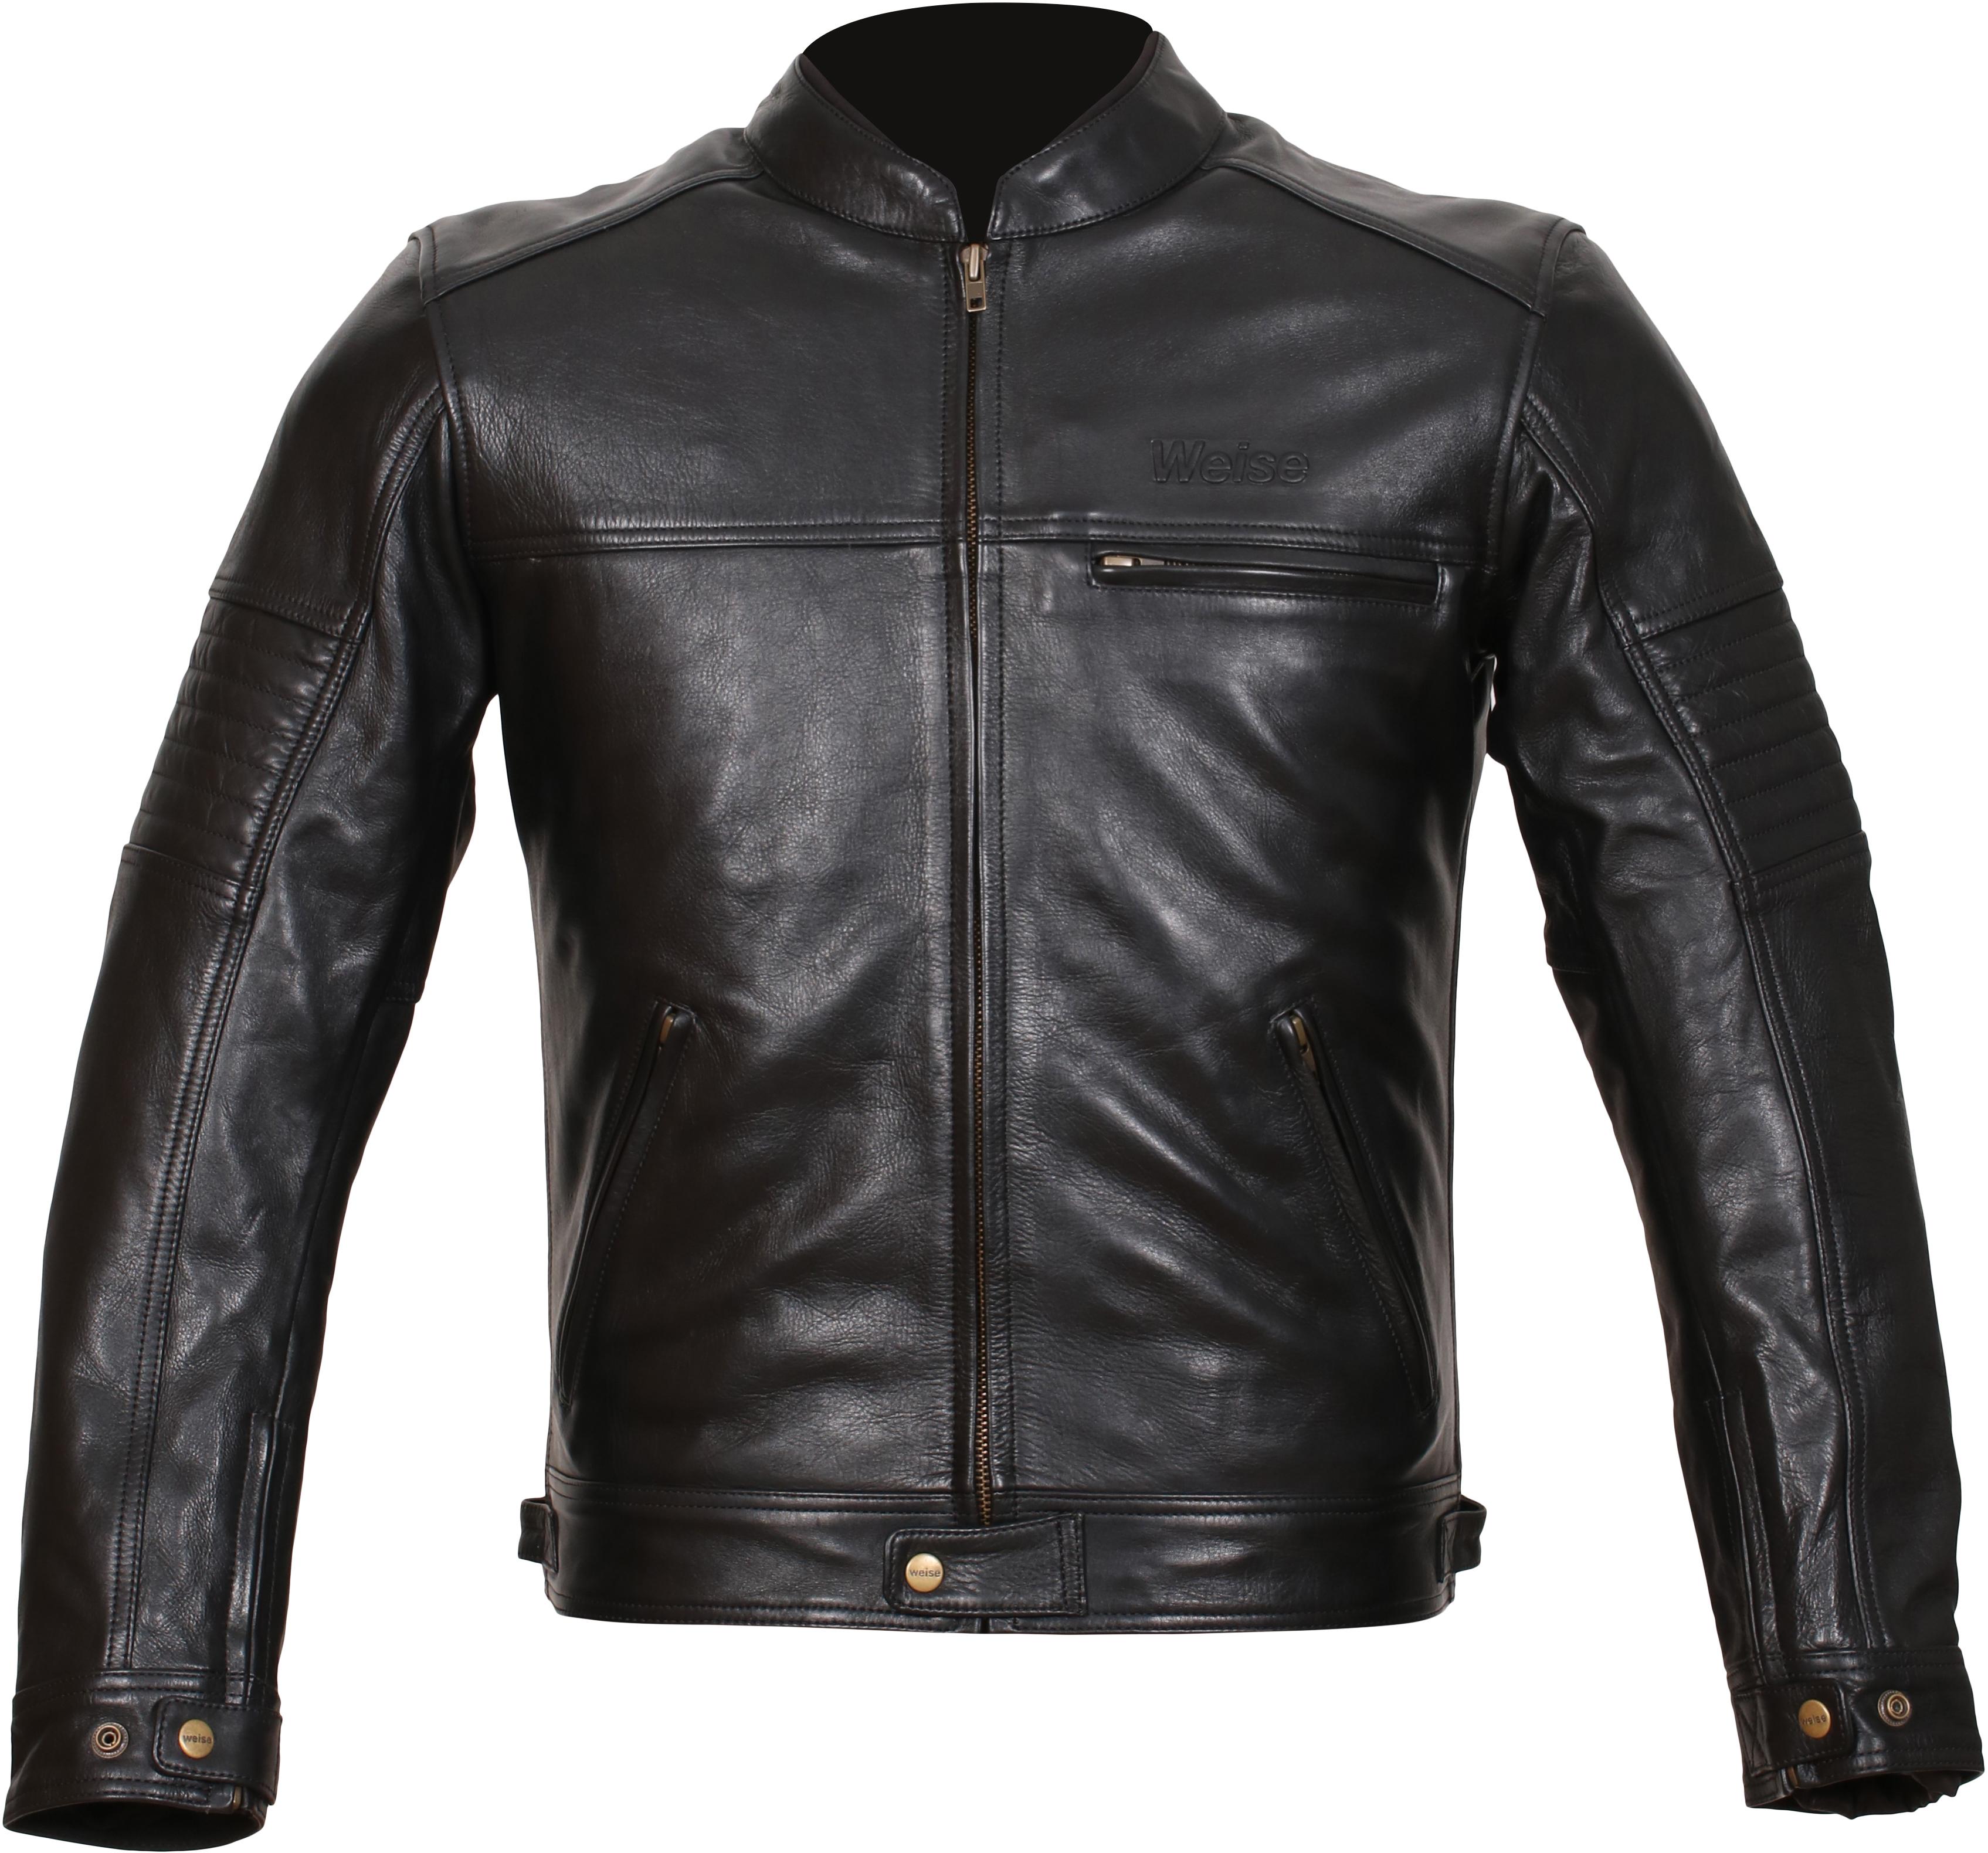 Weise Cabot Leather Motorcycle Jacket - Black, 44